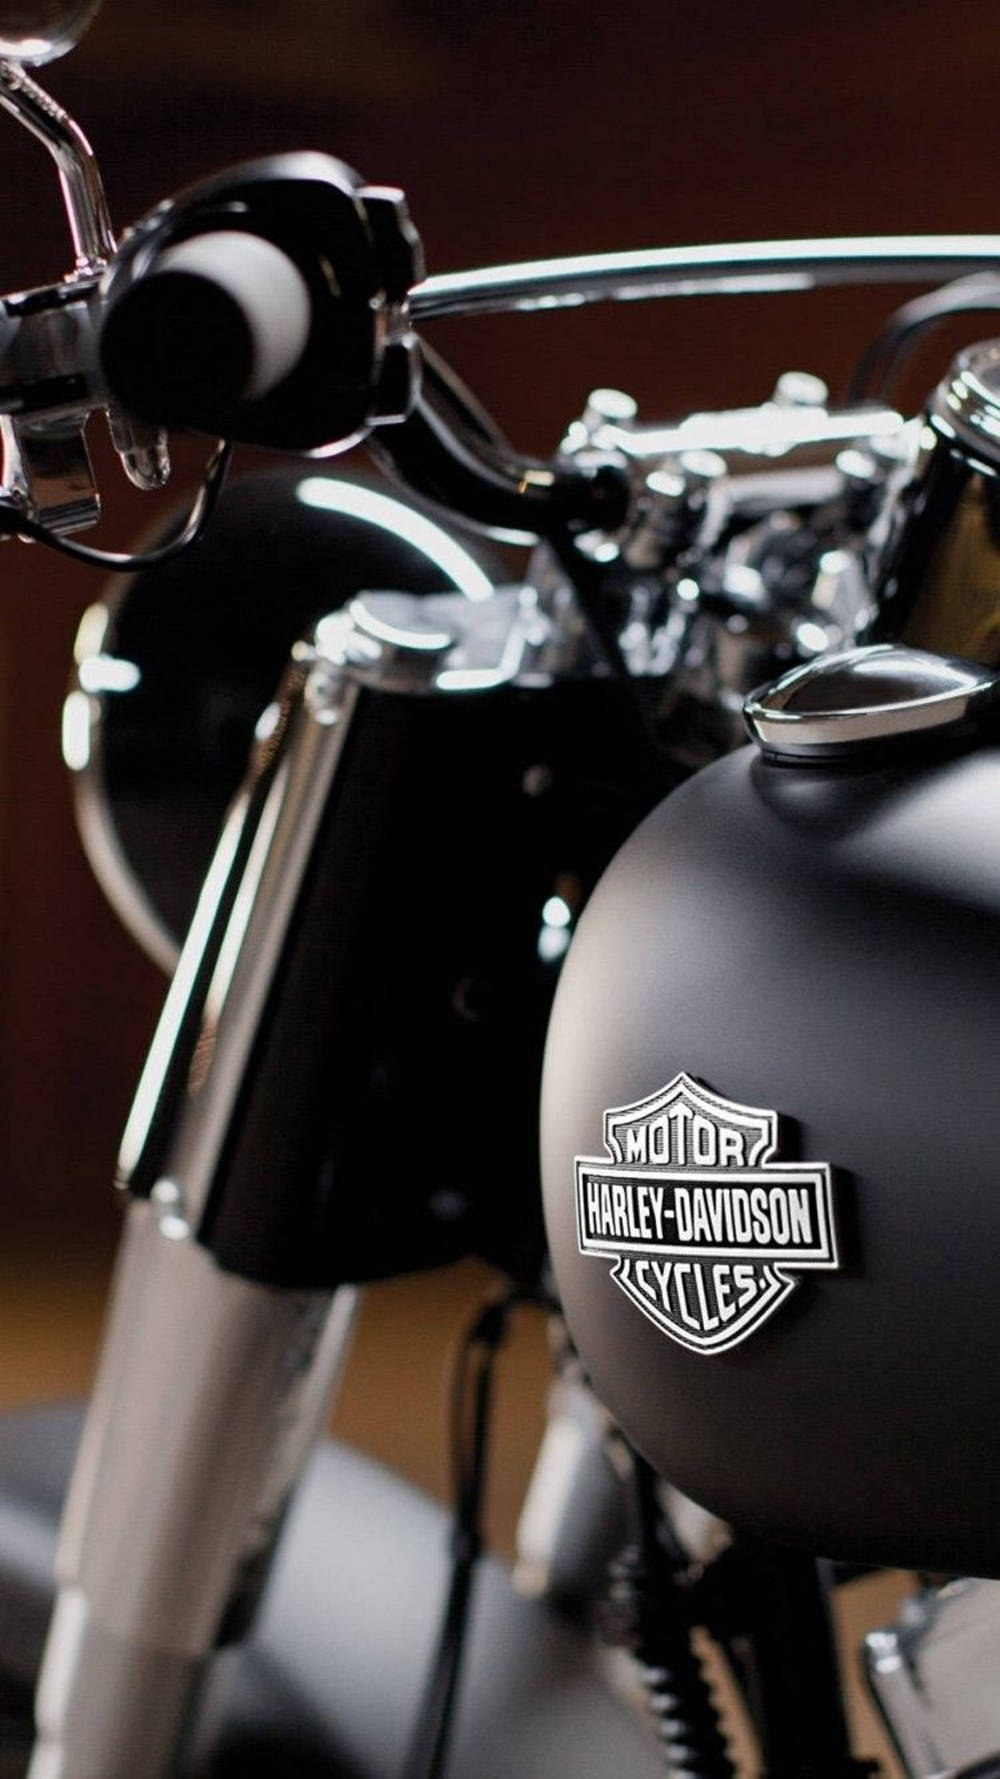 Free Harley Davidson Logo Wallpaper Downloads, [100+] Harley Davidson Logo  Wallpapers for FREE 